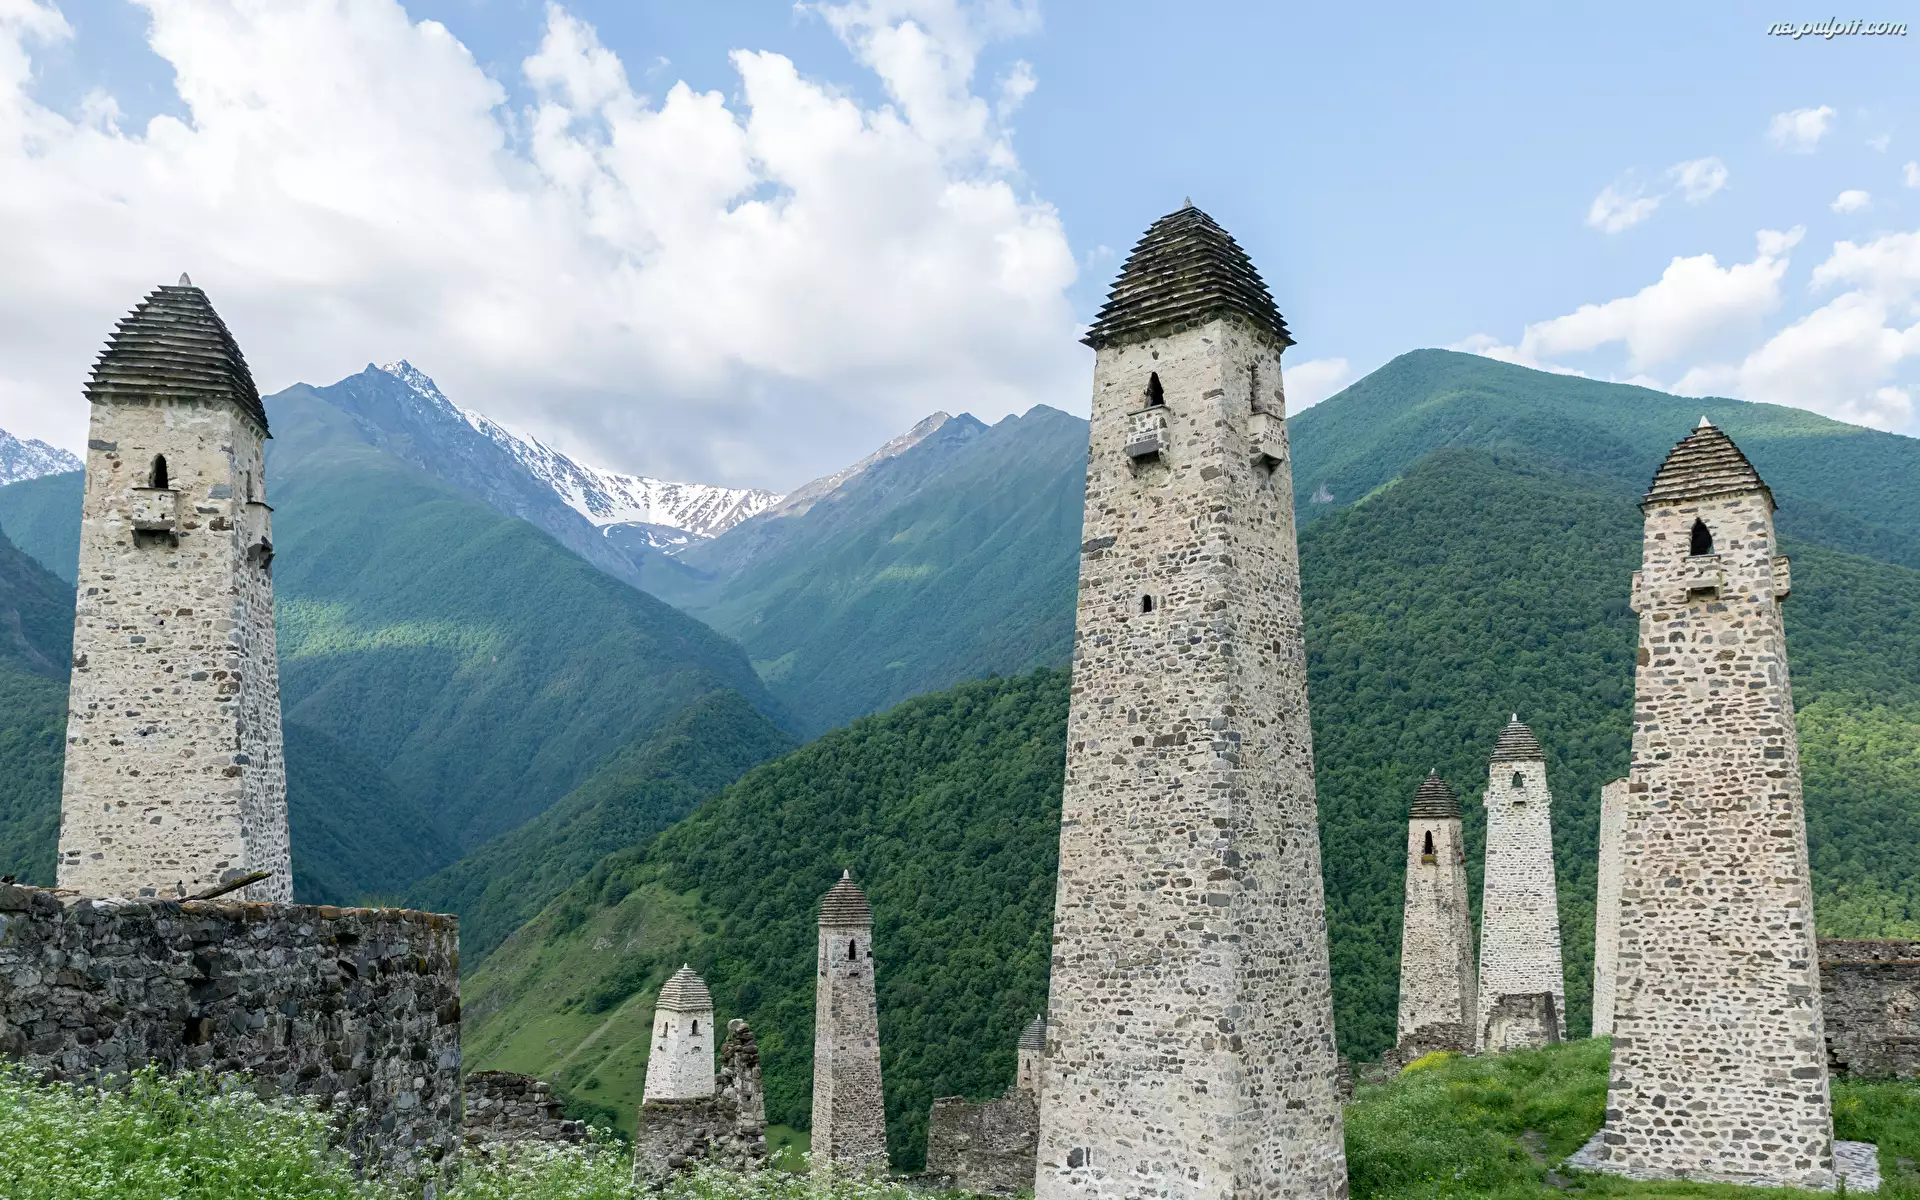 Rosja, Inguszetia, Drzewa, Wieże obronne, Góry, Kaukaz, Skały, Erzi, Ruiny